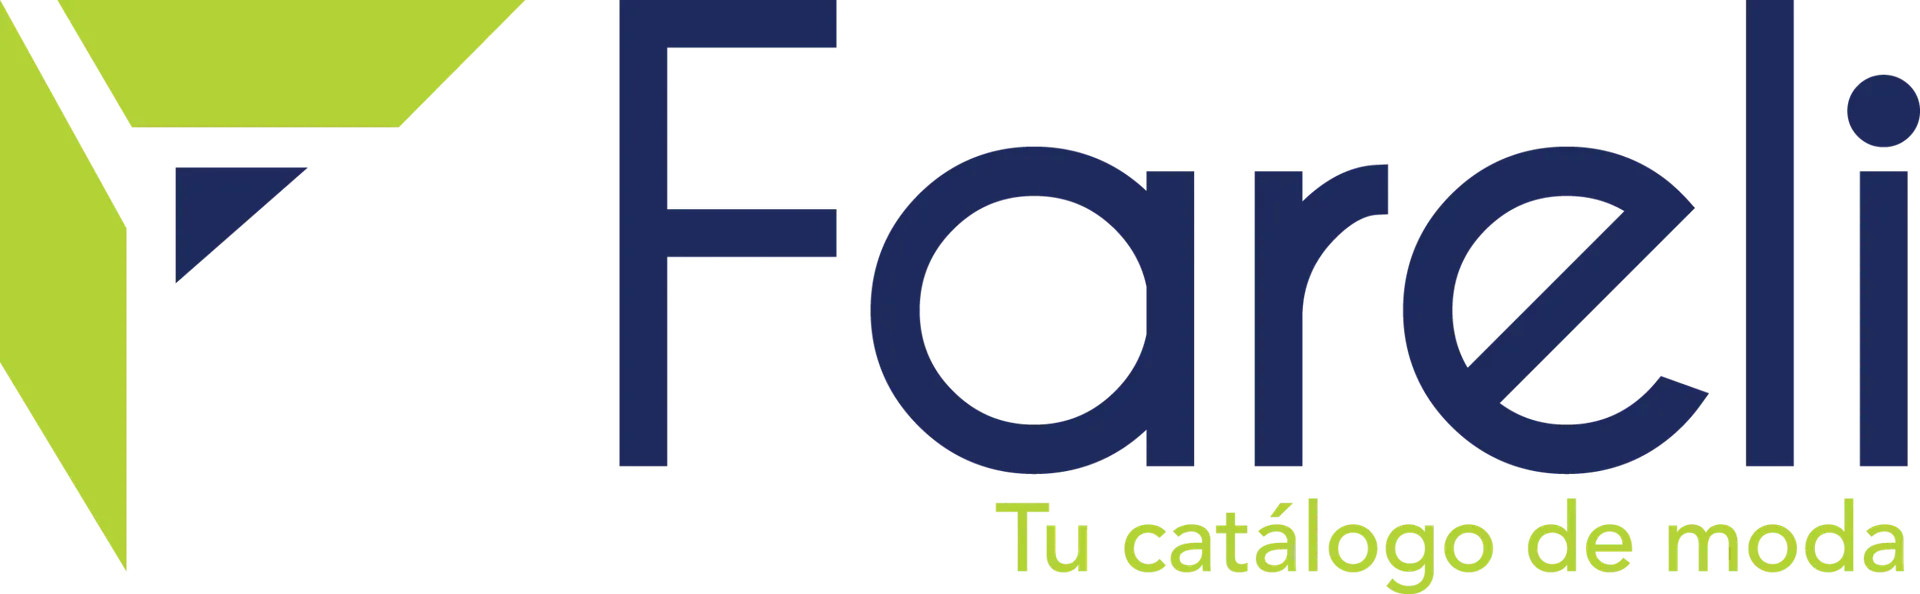 FARELI logo